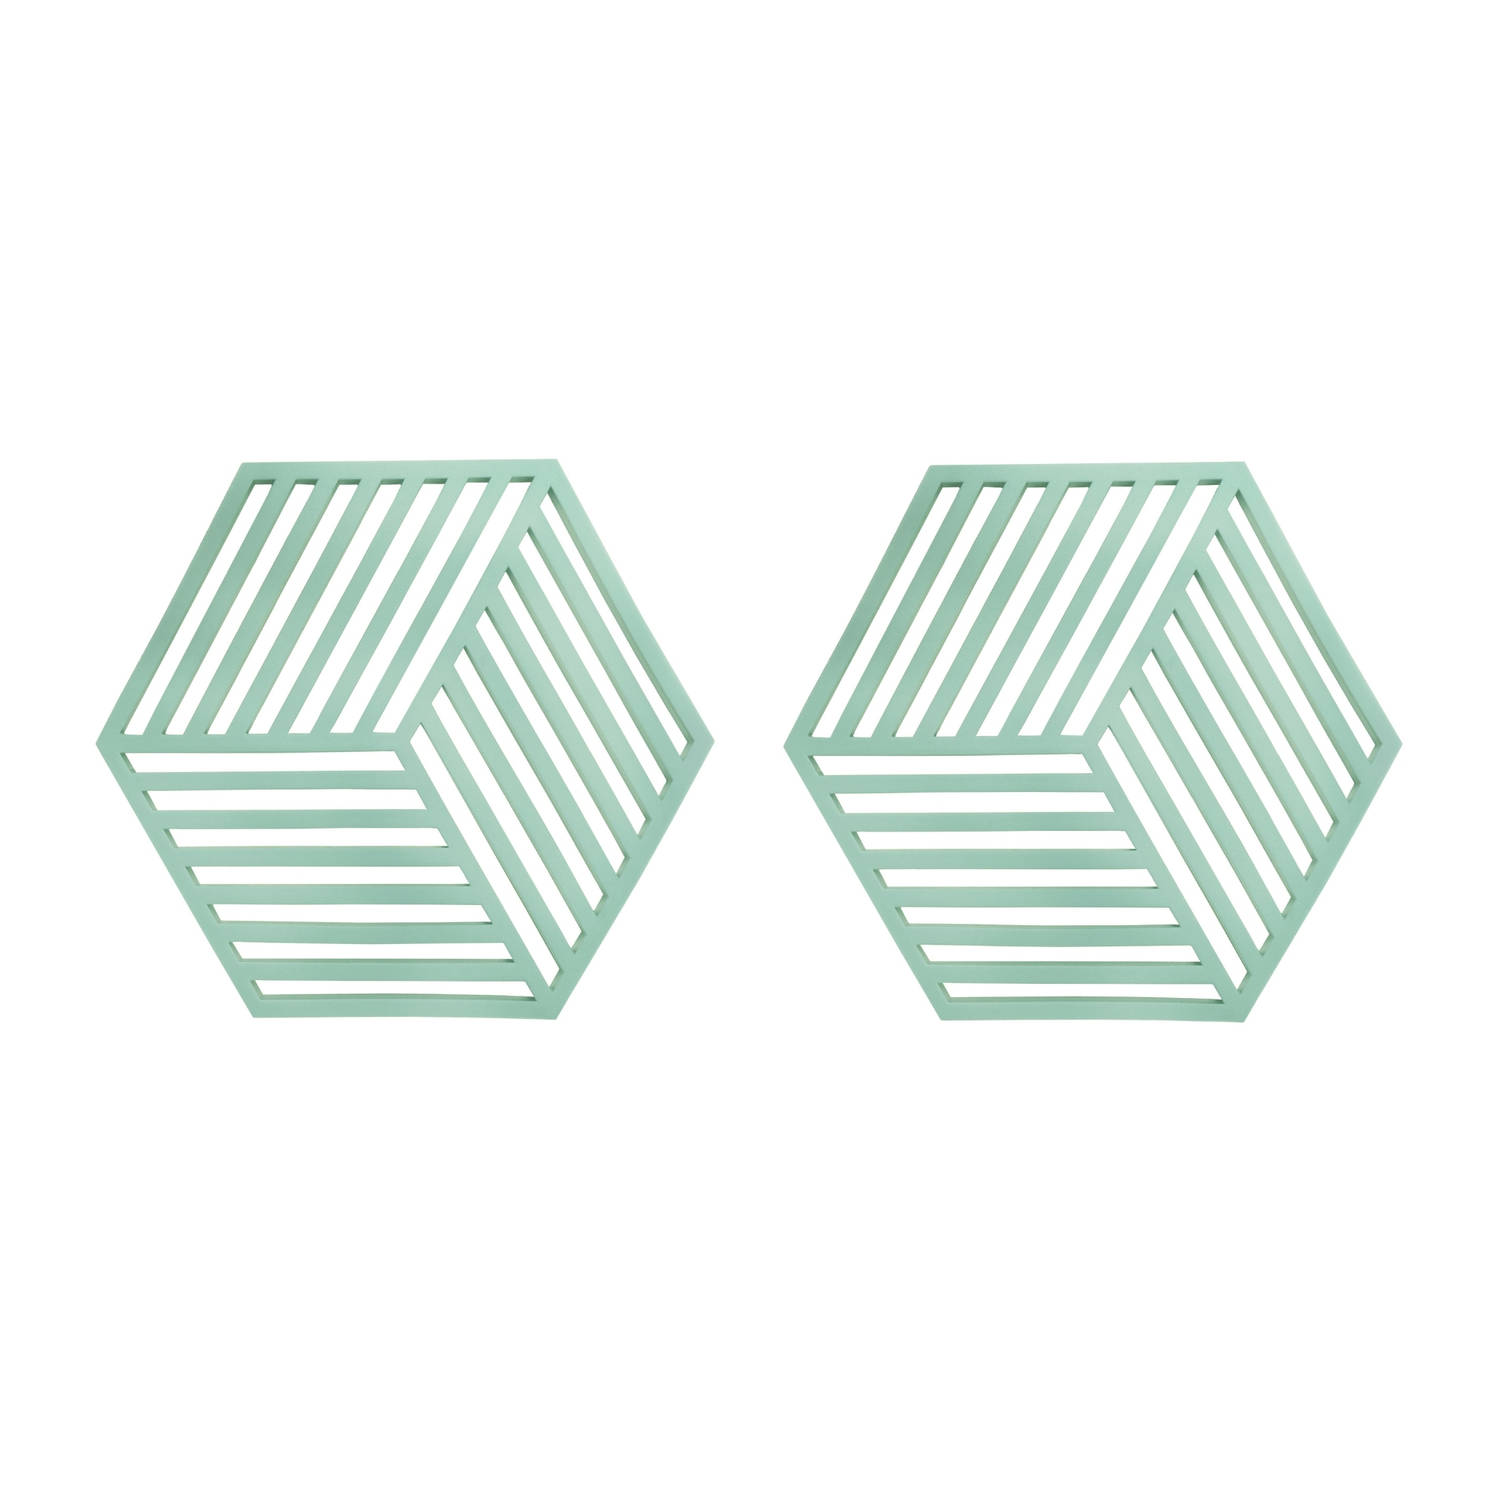 Krumble Pannenonderzetter Hexagon Groen Set van 2